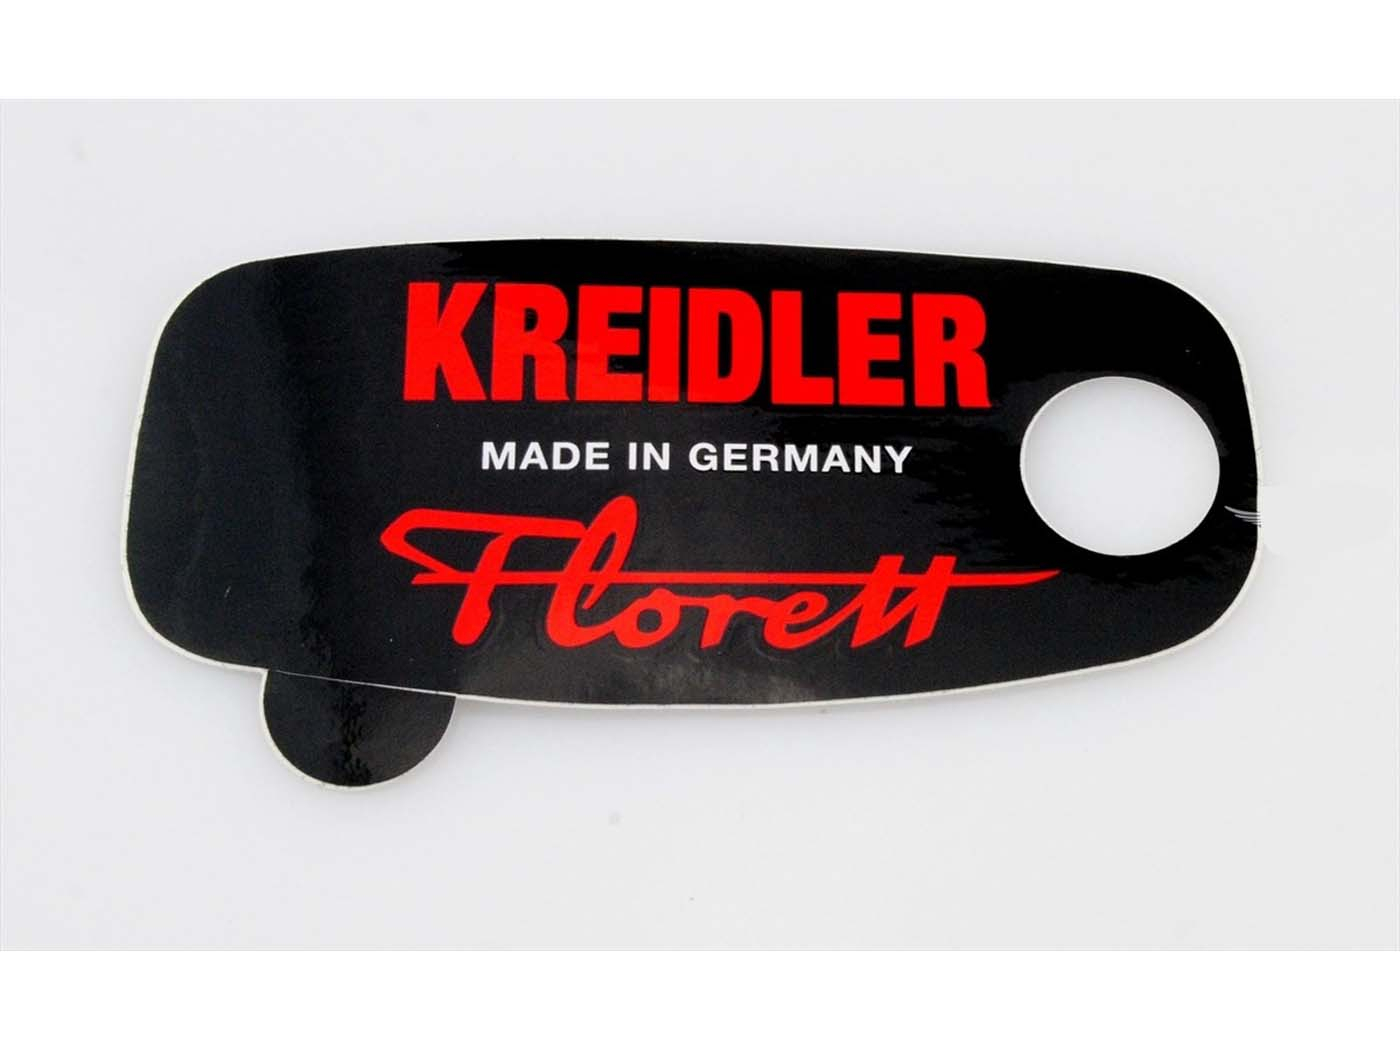 Tool Box Sticker For Kreidler Florett